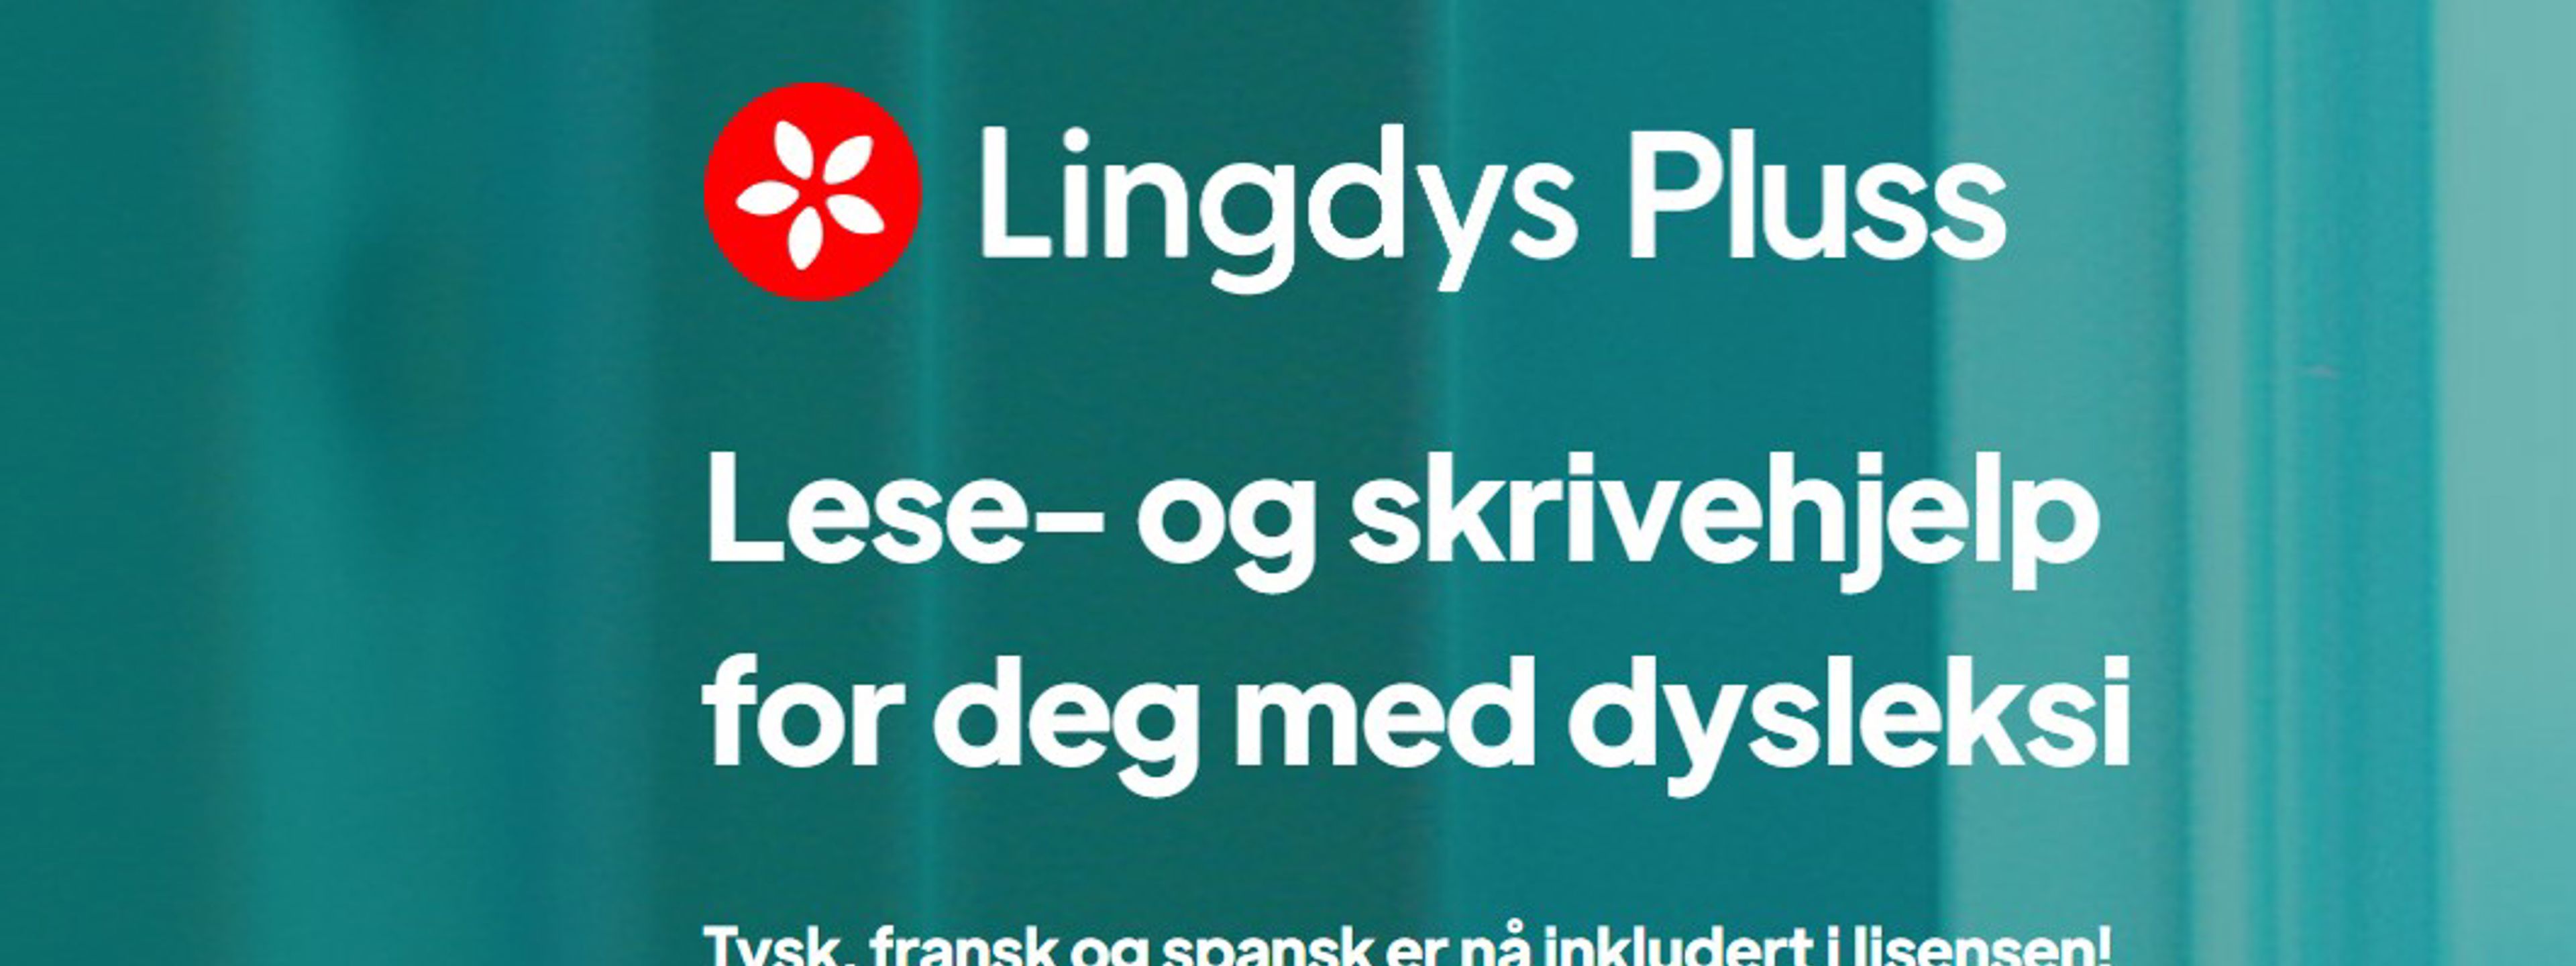 Lingdys Pluss - Lese- og skrivehjelp for deg med dysleksi